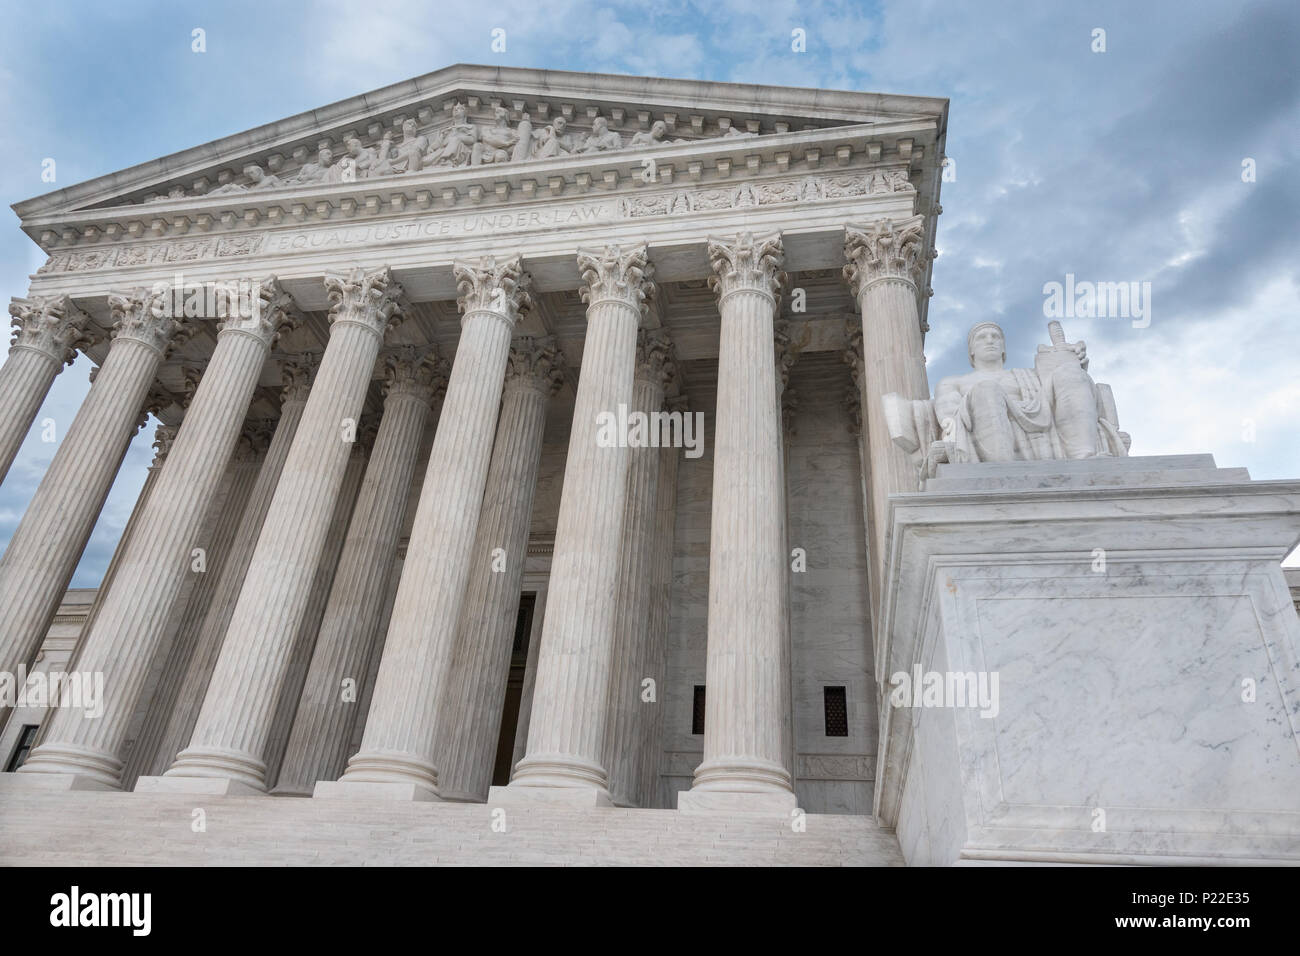 'Égalité devant la justice, conformément à la loi' gravé au-dessus de l'entrée de la colonne, l'Édifice de la Cour suprême, à Washington, DC. Autorité de justice statue en premier plan Banque D'Images